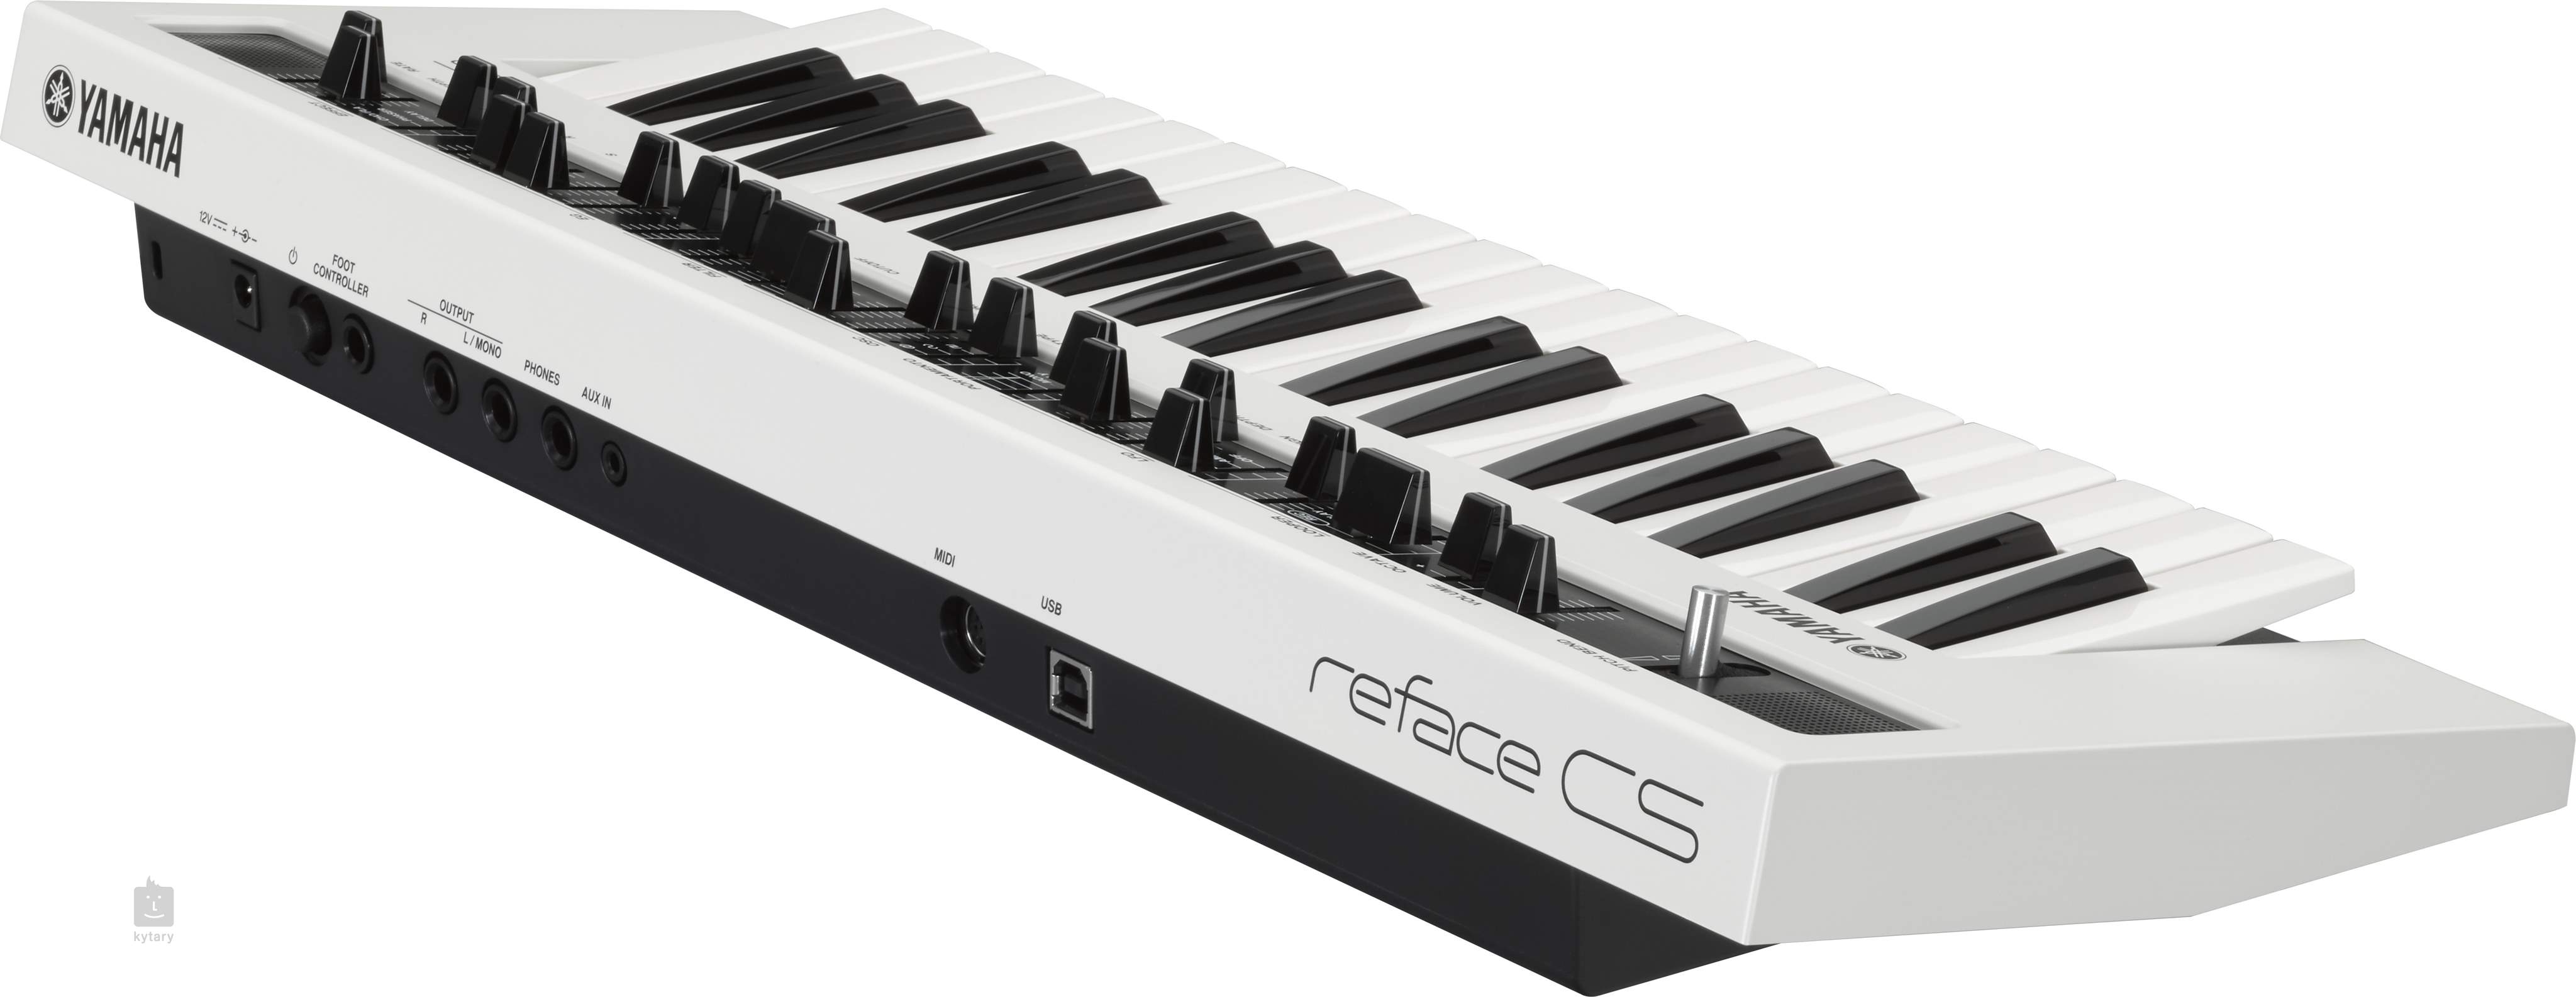 yamaha reface cs mobile mini keyboard synthesizer